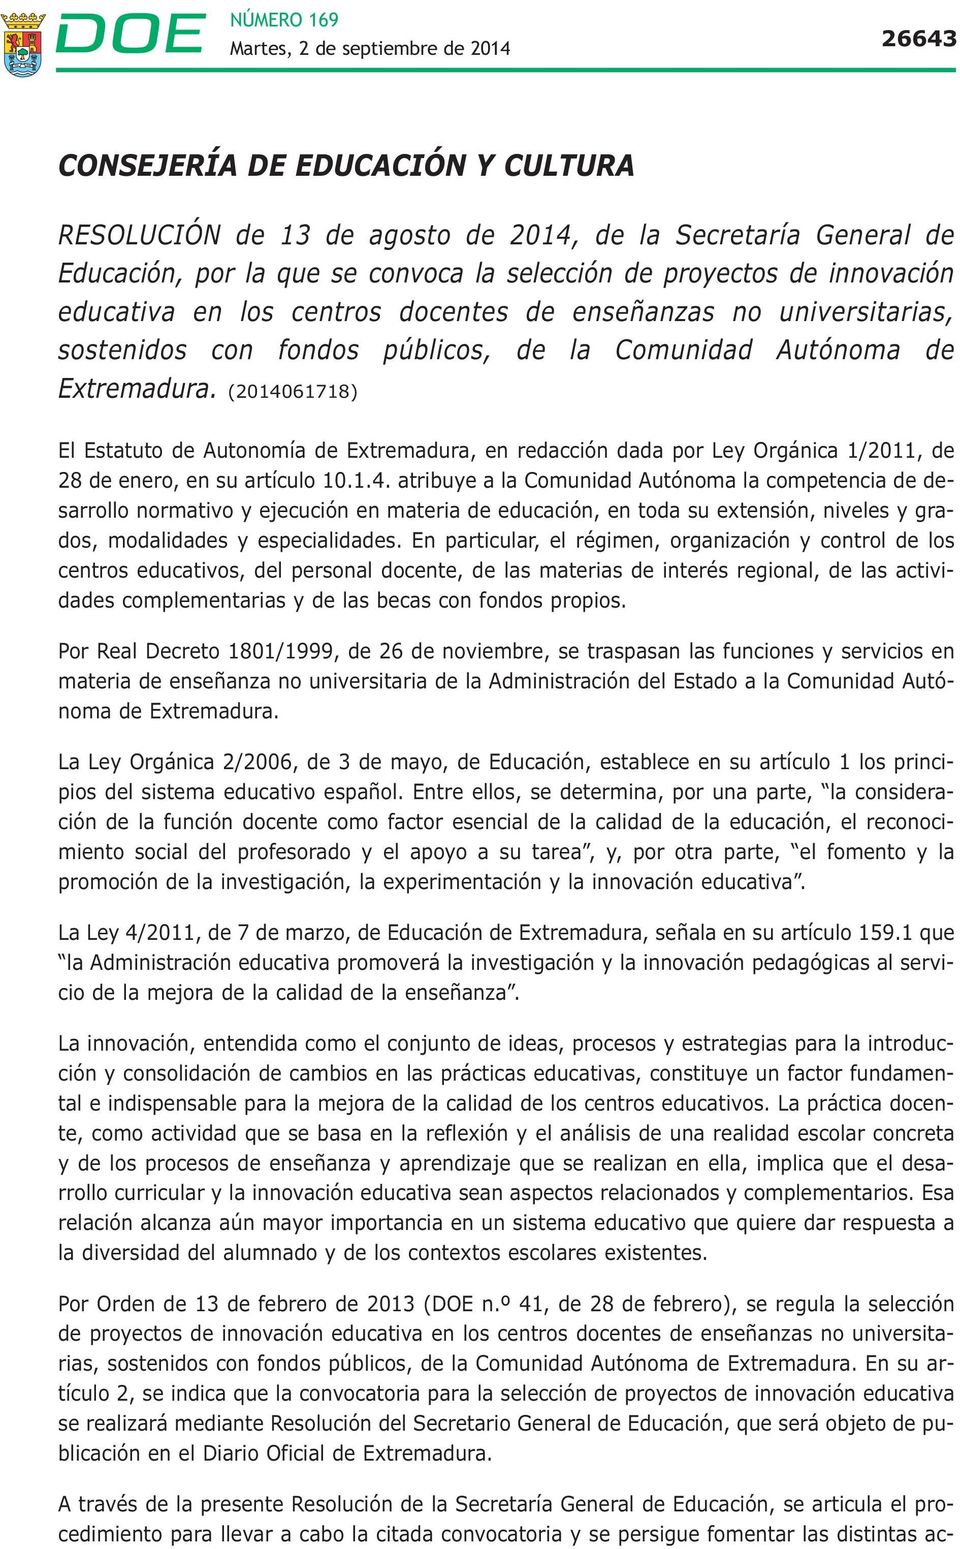 (2014061718) El Estatuto de Autonomía de Extremadura, en redacción dada por Ley Orgánica 1/2011, de 28 de enero, en su artículo 10.1.4. atribuye a la Comunidad Autónoma la competencia de desarrollo normativo y ejecución en materia de educación, en toda su extensión, niveles y grados, modalidades y especialidades.